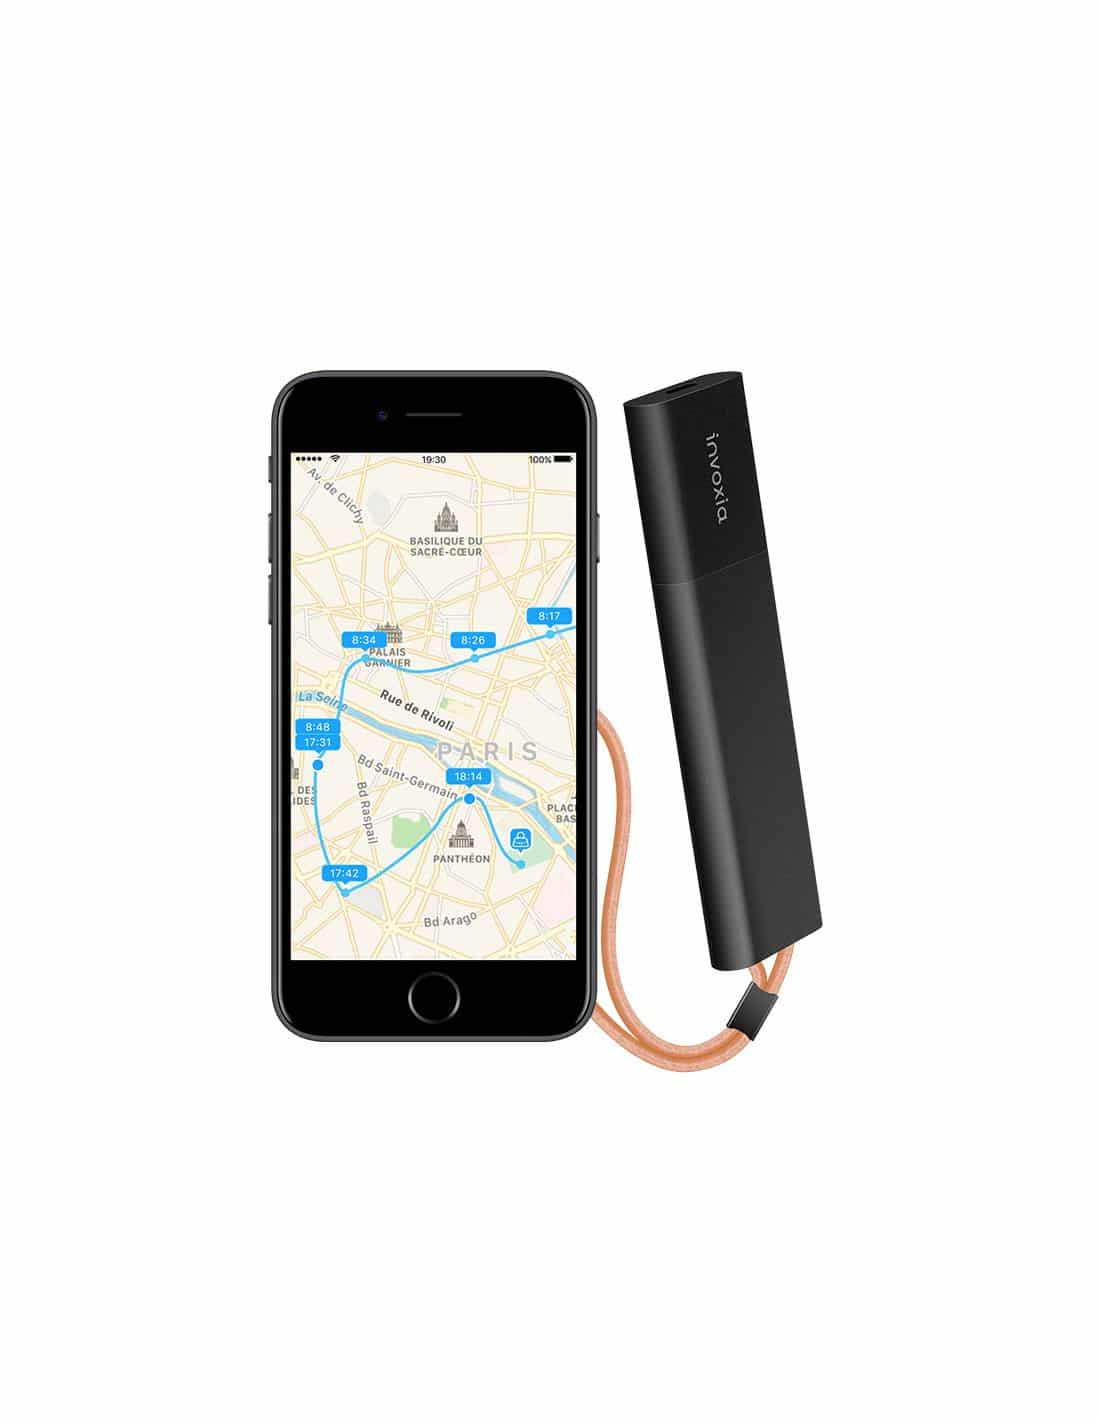 INVOXIA TRACKER GPS - ePlay  Le n°1 des loisirs électriques sur